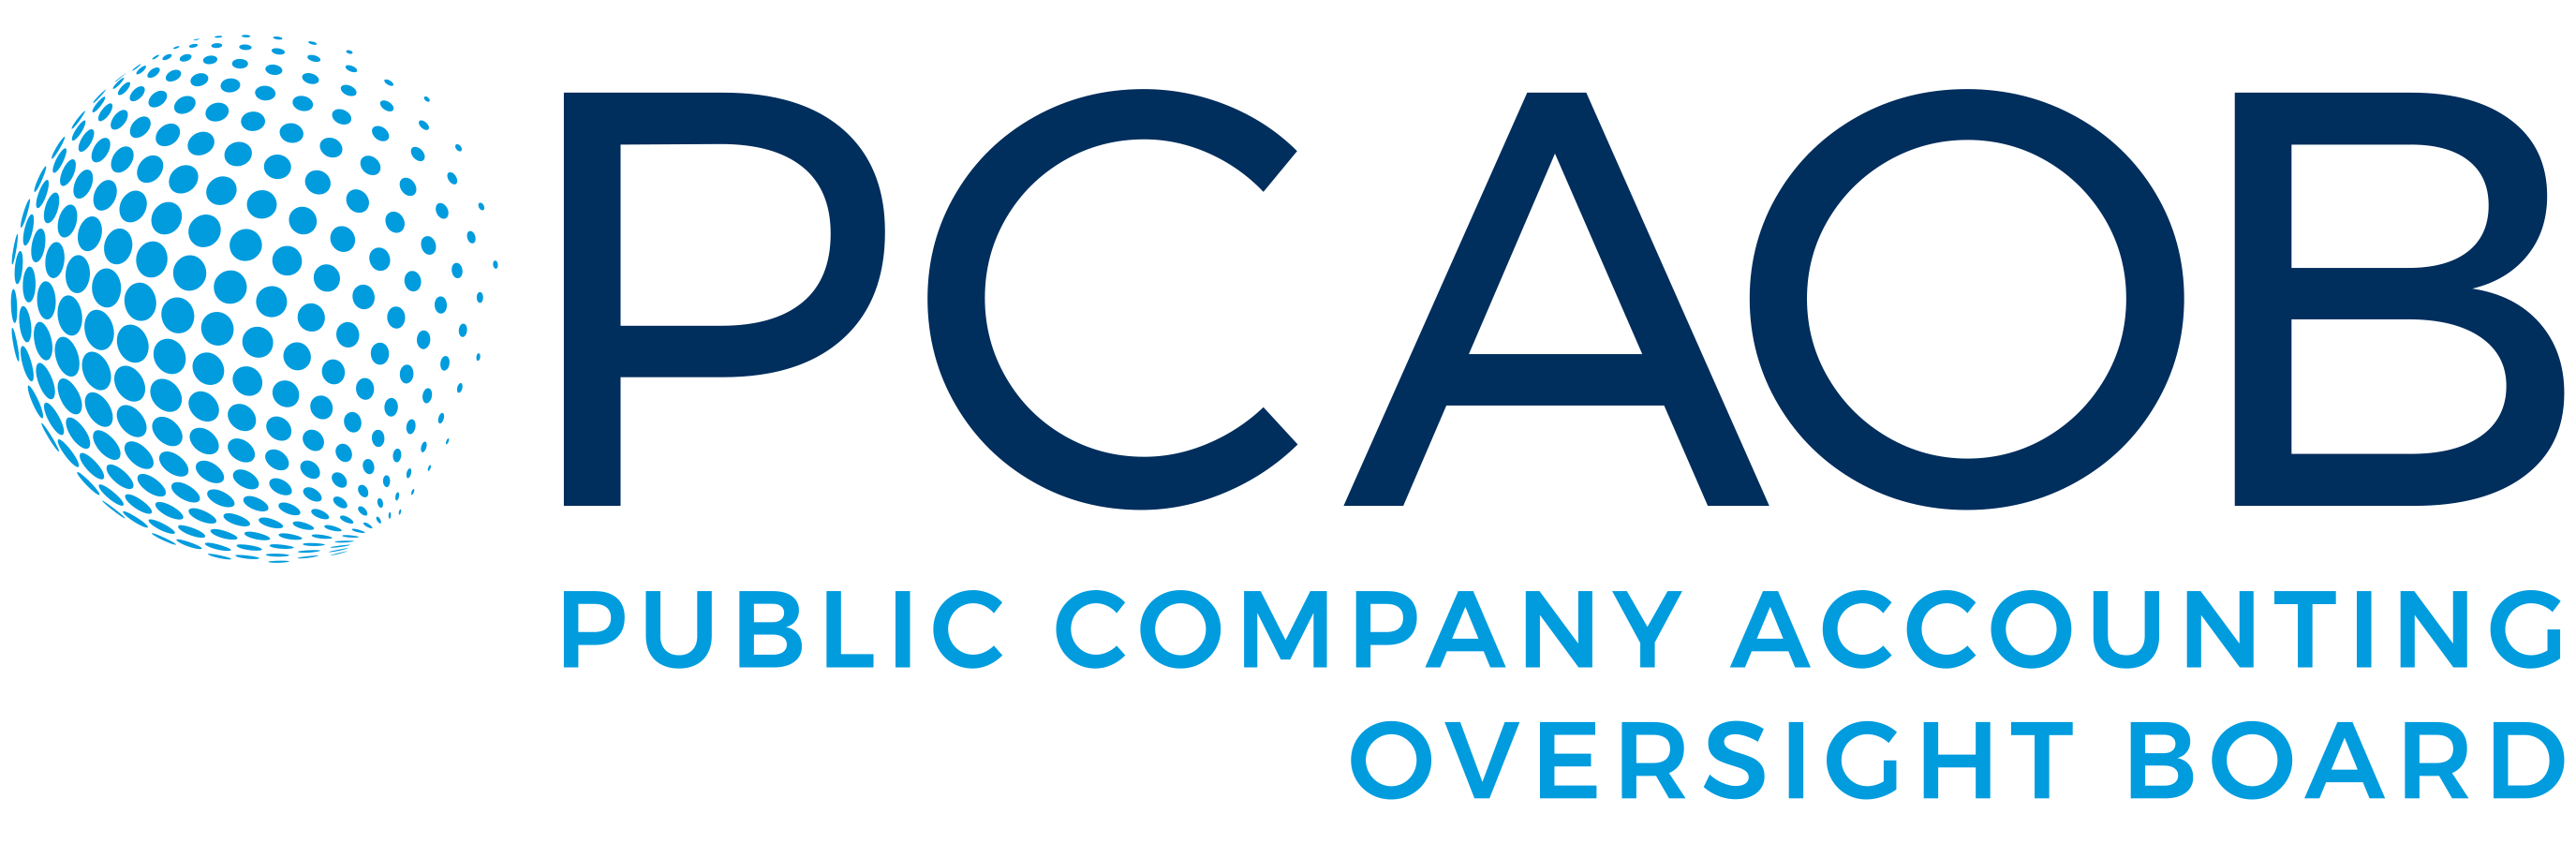 pcaob logo